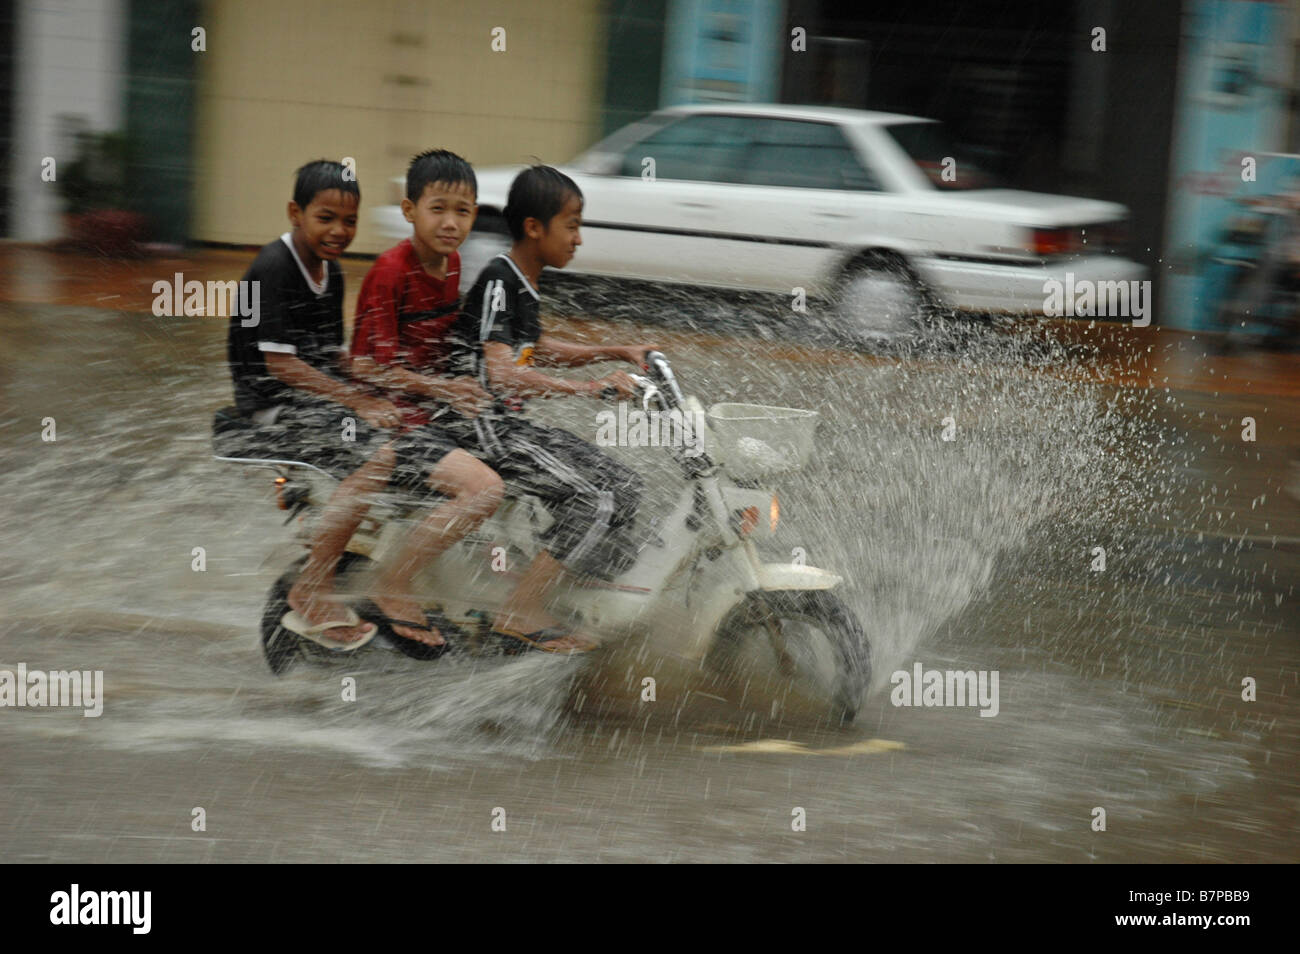 Kambodschanischen jungen überflutet Dahmsdorfer für Spaß zu reiten. Stockfoto